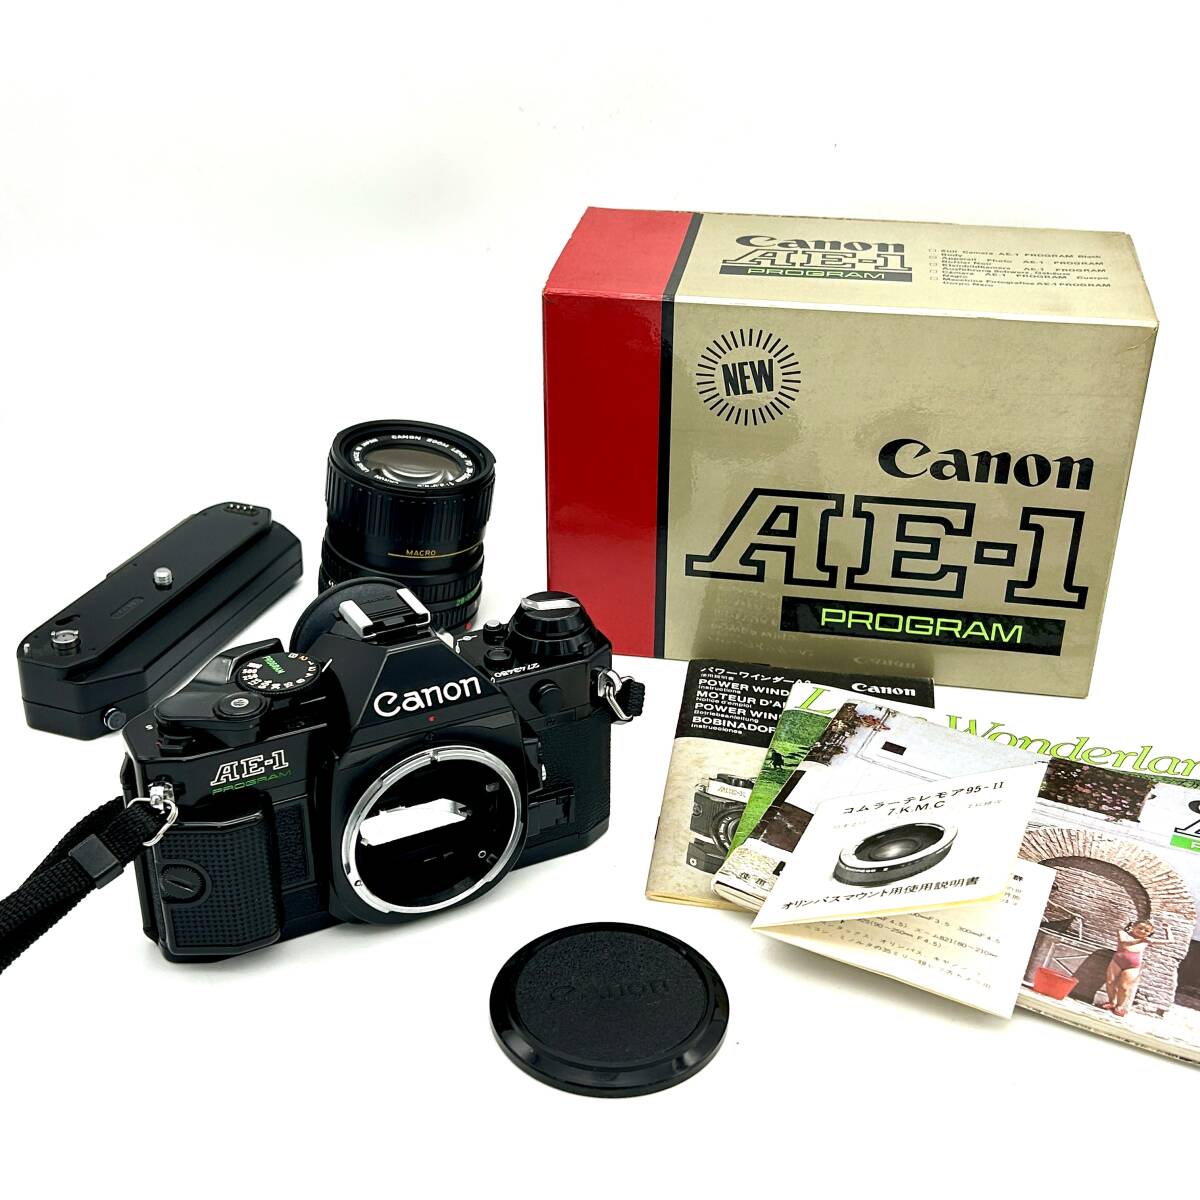 HY1531■【シャッターOK】Canon AE-1 PROGRAM ブラック ズームレンズ 28-55mm 1:3.5-4.5 POWER WINDER A2 付き カメラ フィルムカメラ _画像1